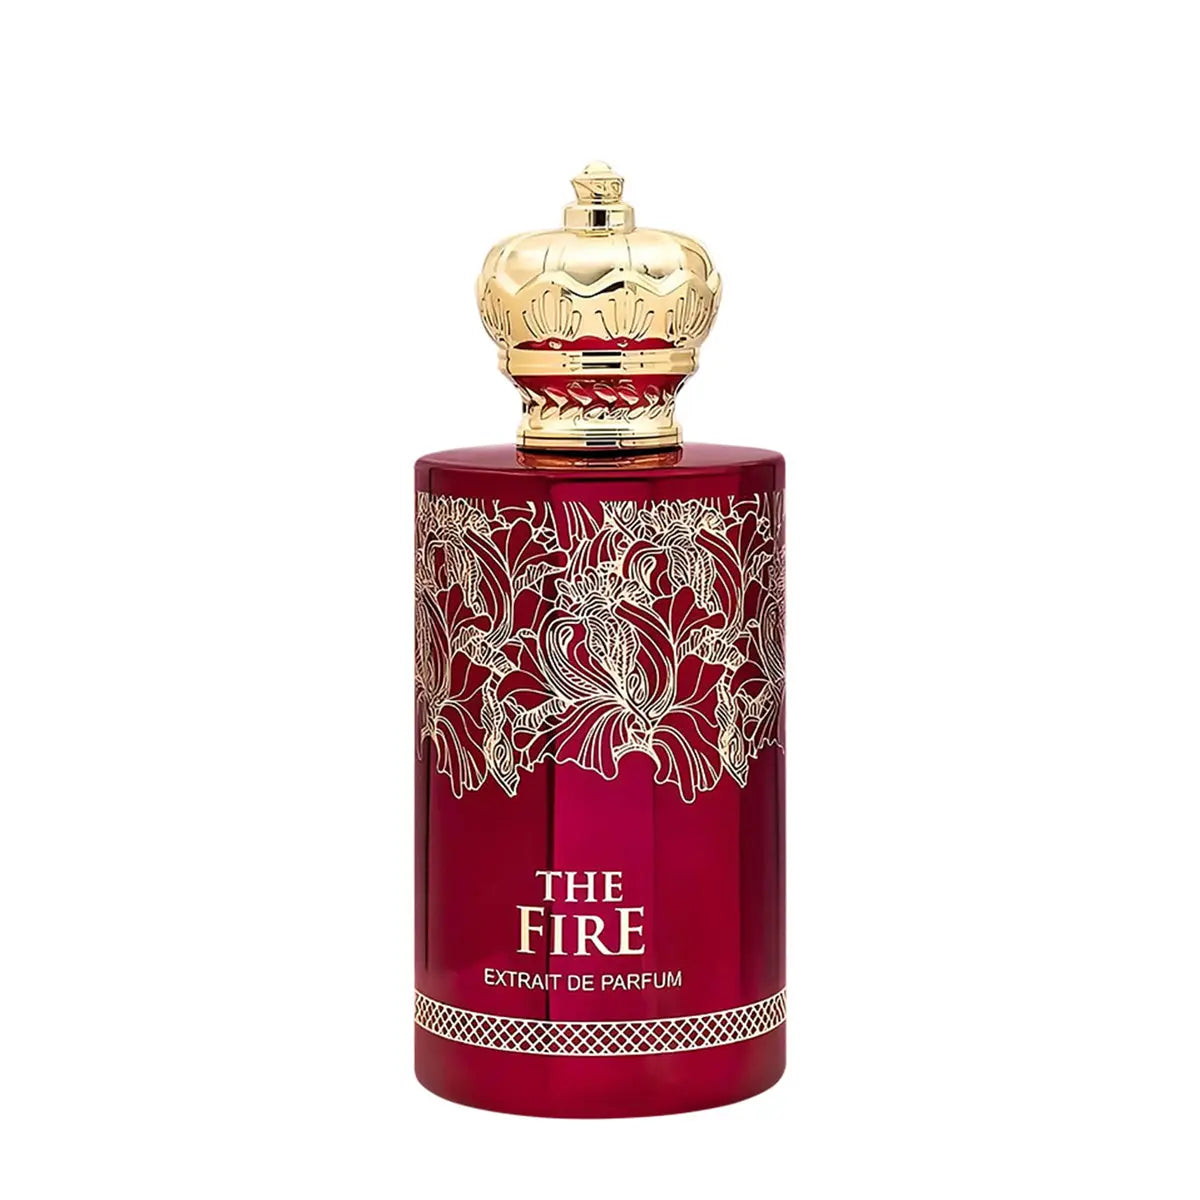 The Fire Extrait De Parfum 60ml FA Paris Niche by Fragrance World